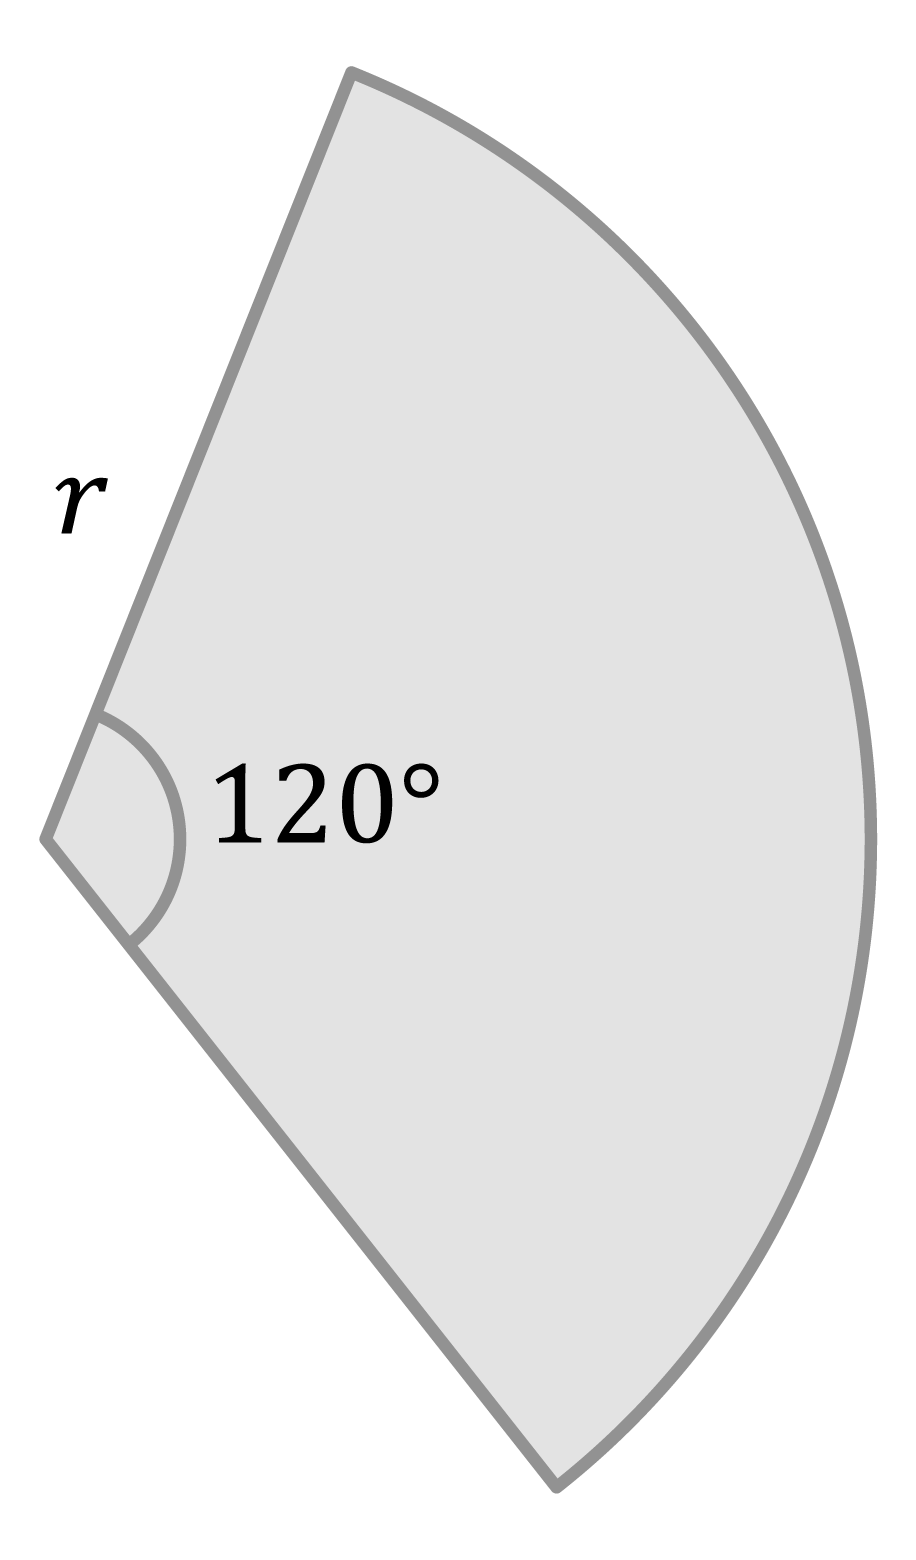 Matemáticas; Circunferencias; 1. ESO; Cálculo del perímetro y área de circunferencias